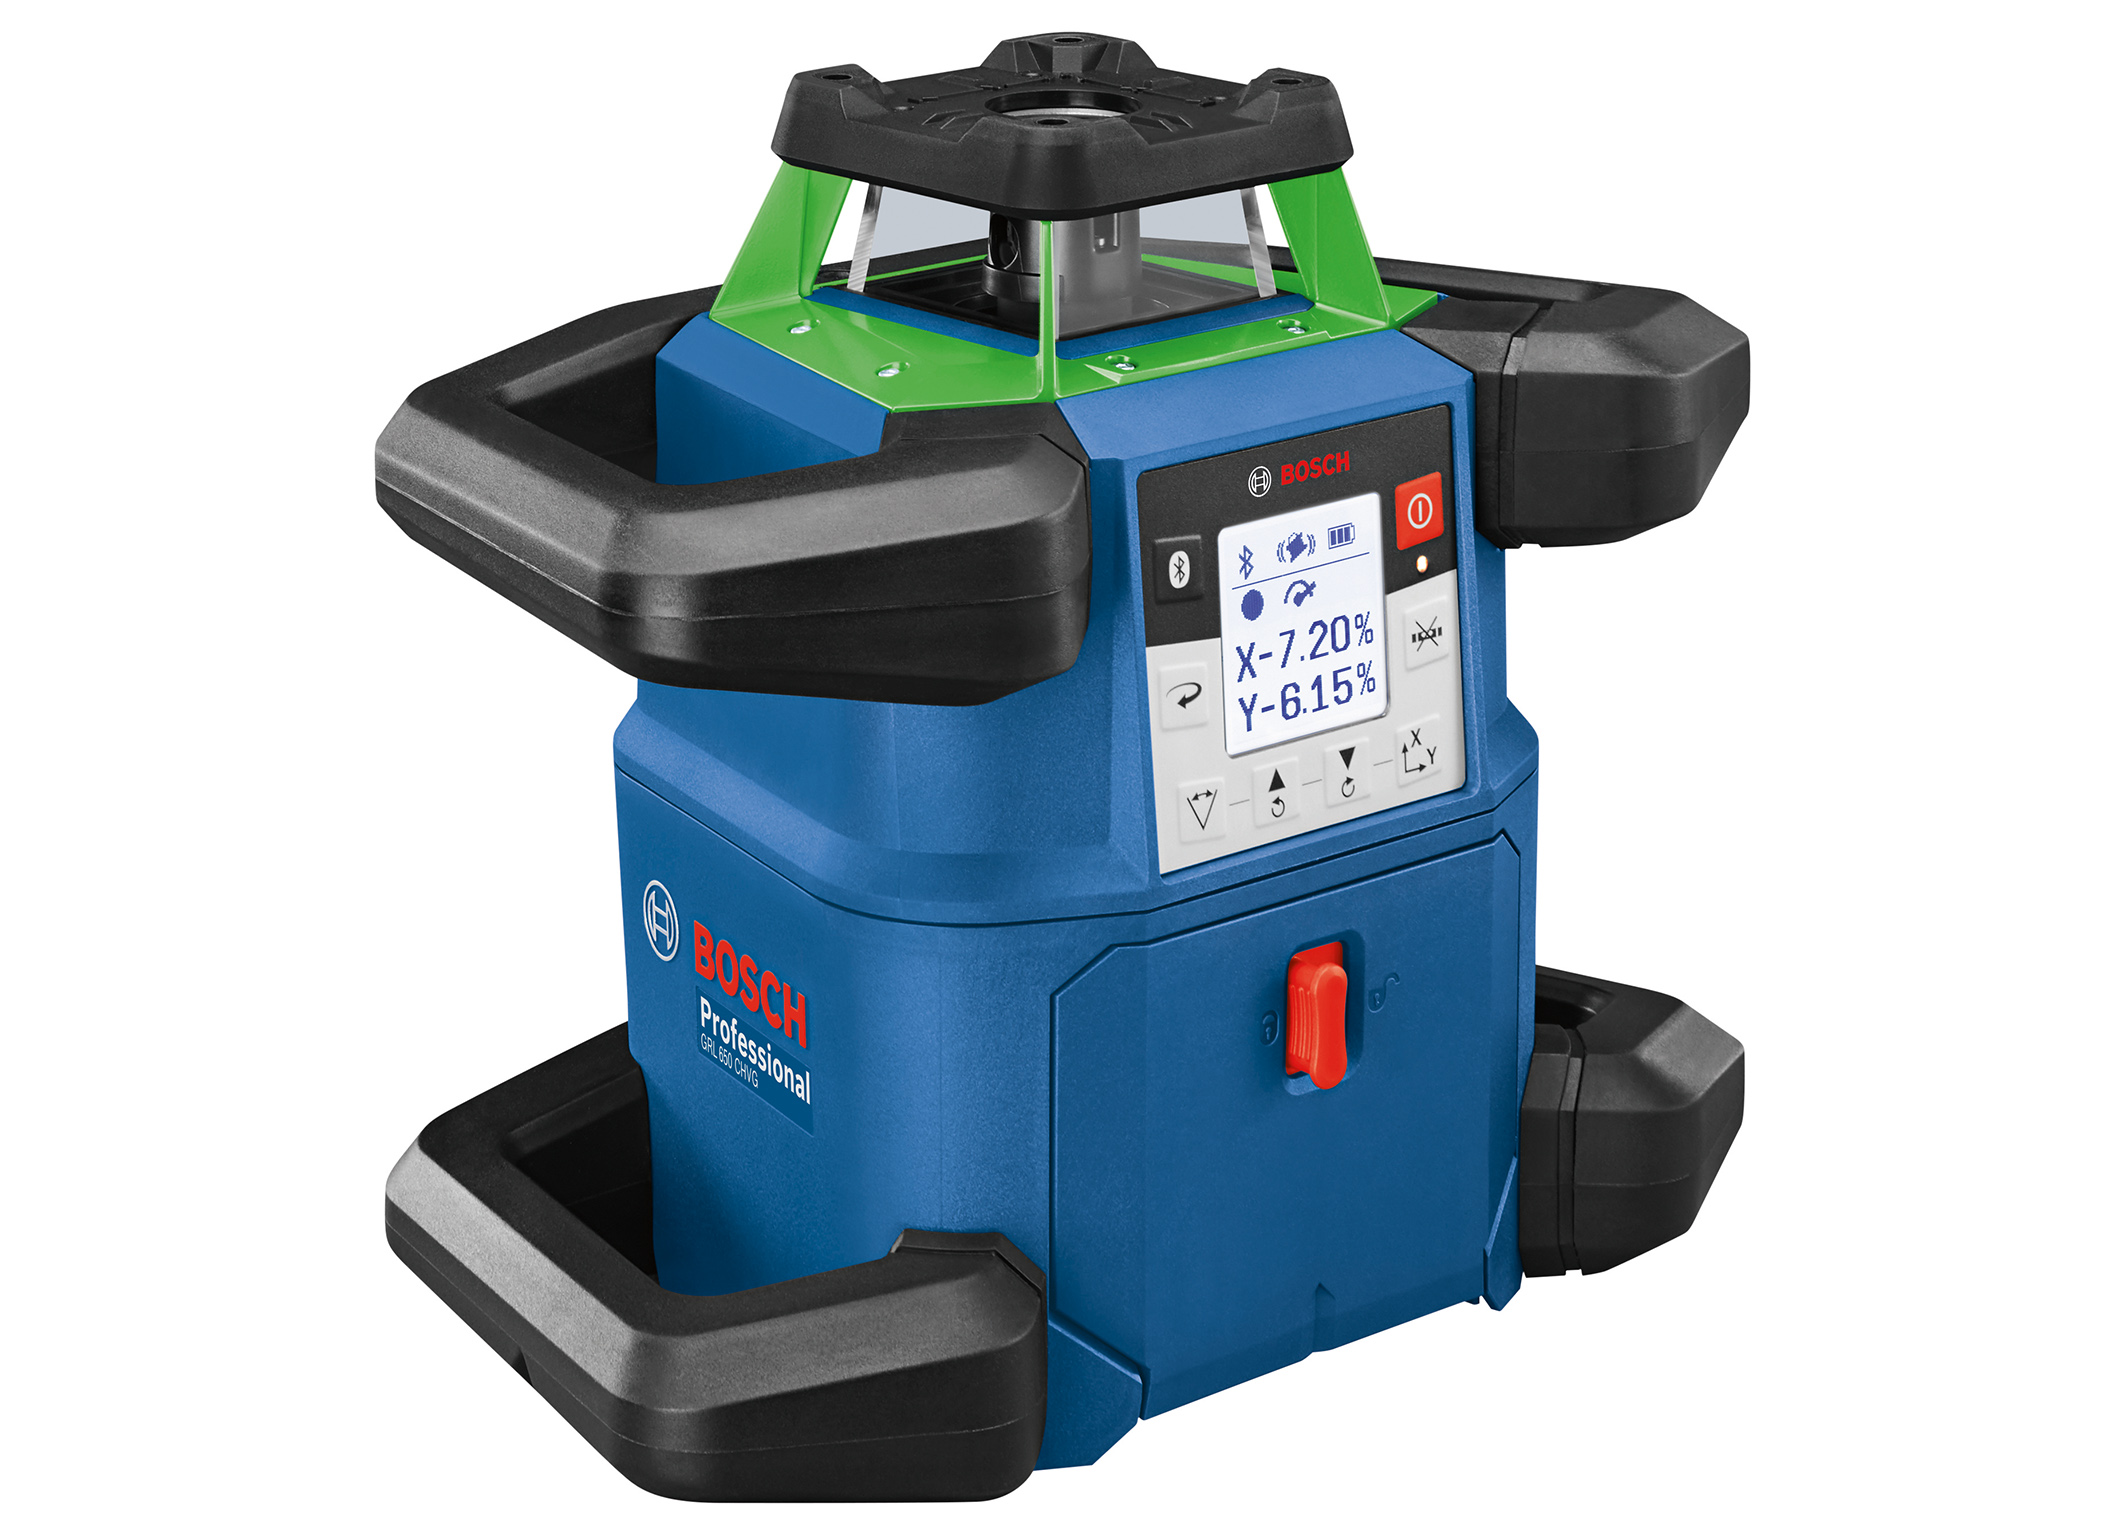 Robustes Design gepaart mit grünem Laser: Rotationslaser GRL 650 CHVG Professional von Bosch für Profis